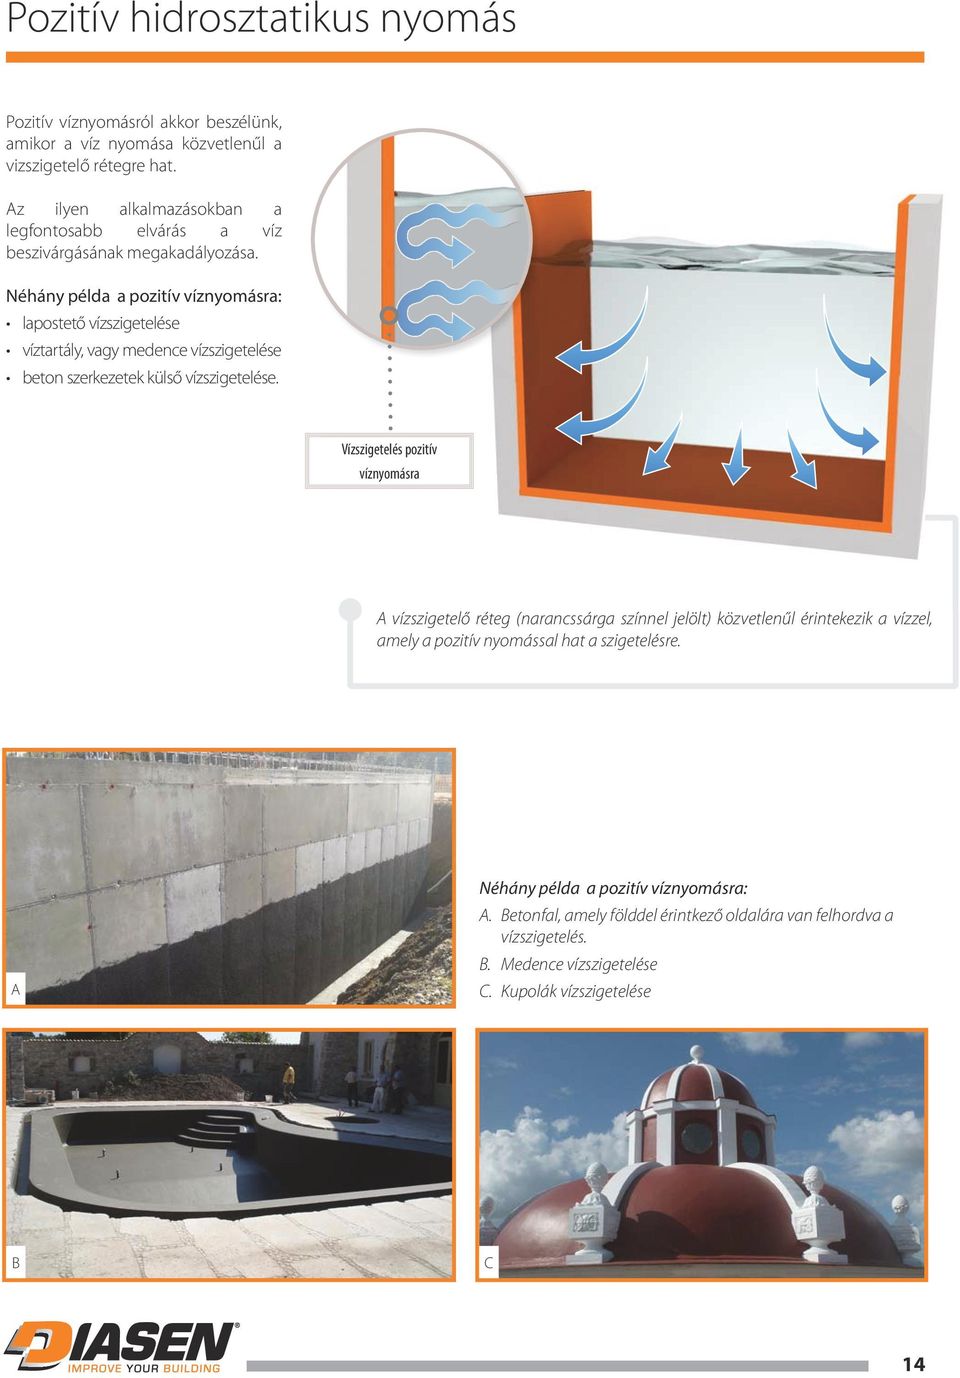 Néhány példa a pozitív víznyomásra: lapostető vízszigetelése víztartály, vagy medence vízszigetelése beton szerkezetek külső vízszigetelése.